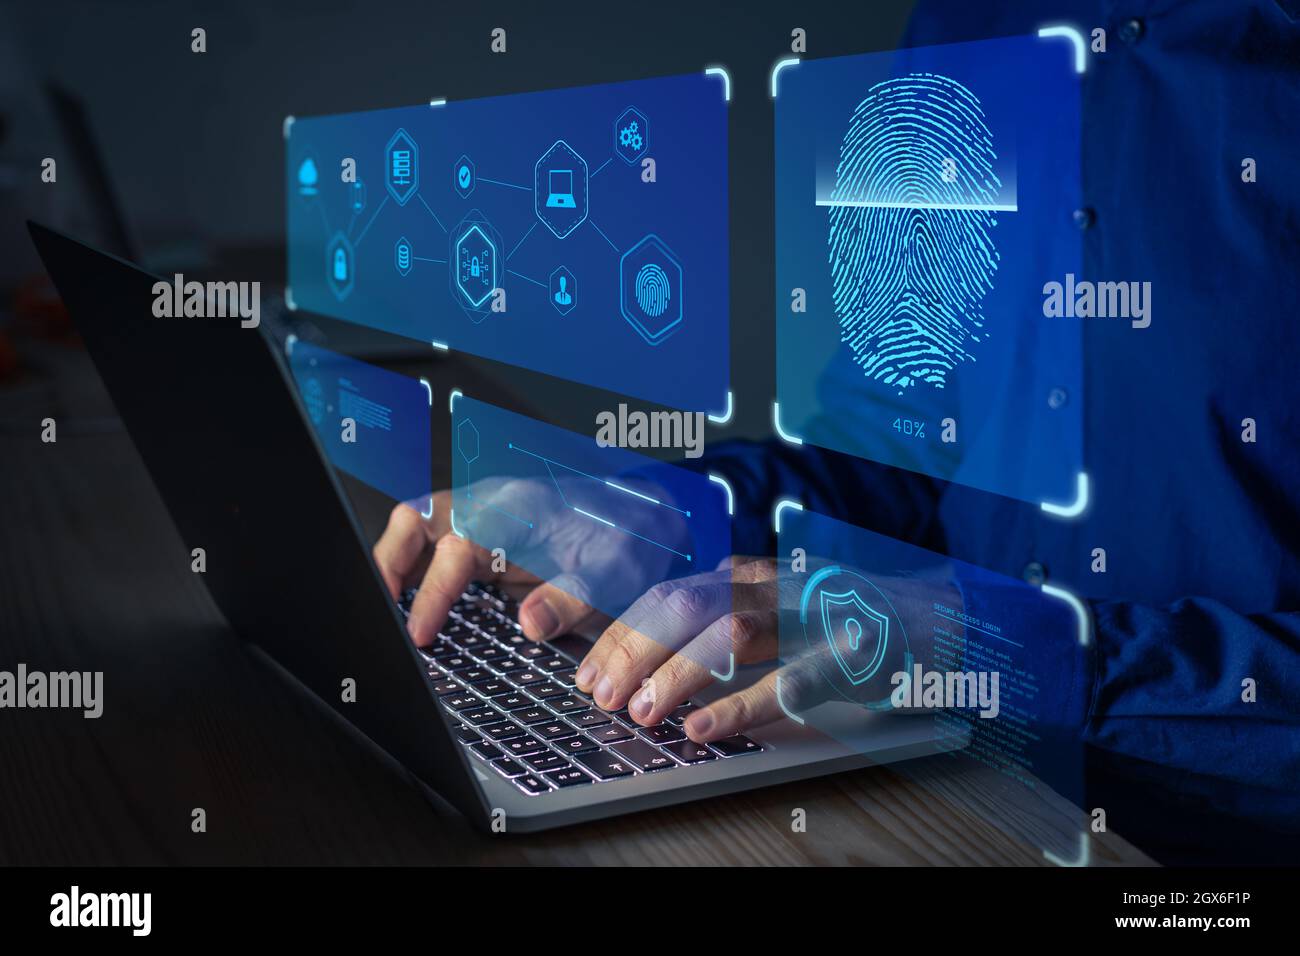 Fingerabdruck-Scan für sicheren Zugriff auf geschützte Datennetzwerke mit Biometrie. Person, die Fingerabdruck-Authentifizierungstechnologie auf einem Laptop-Computer verwendet Stockfoto